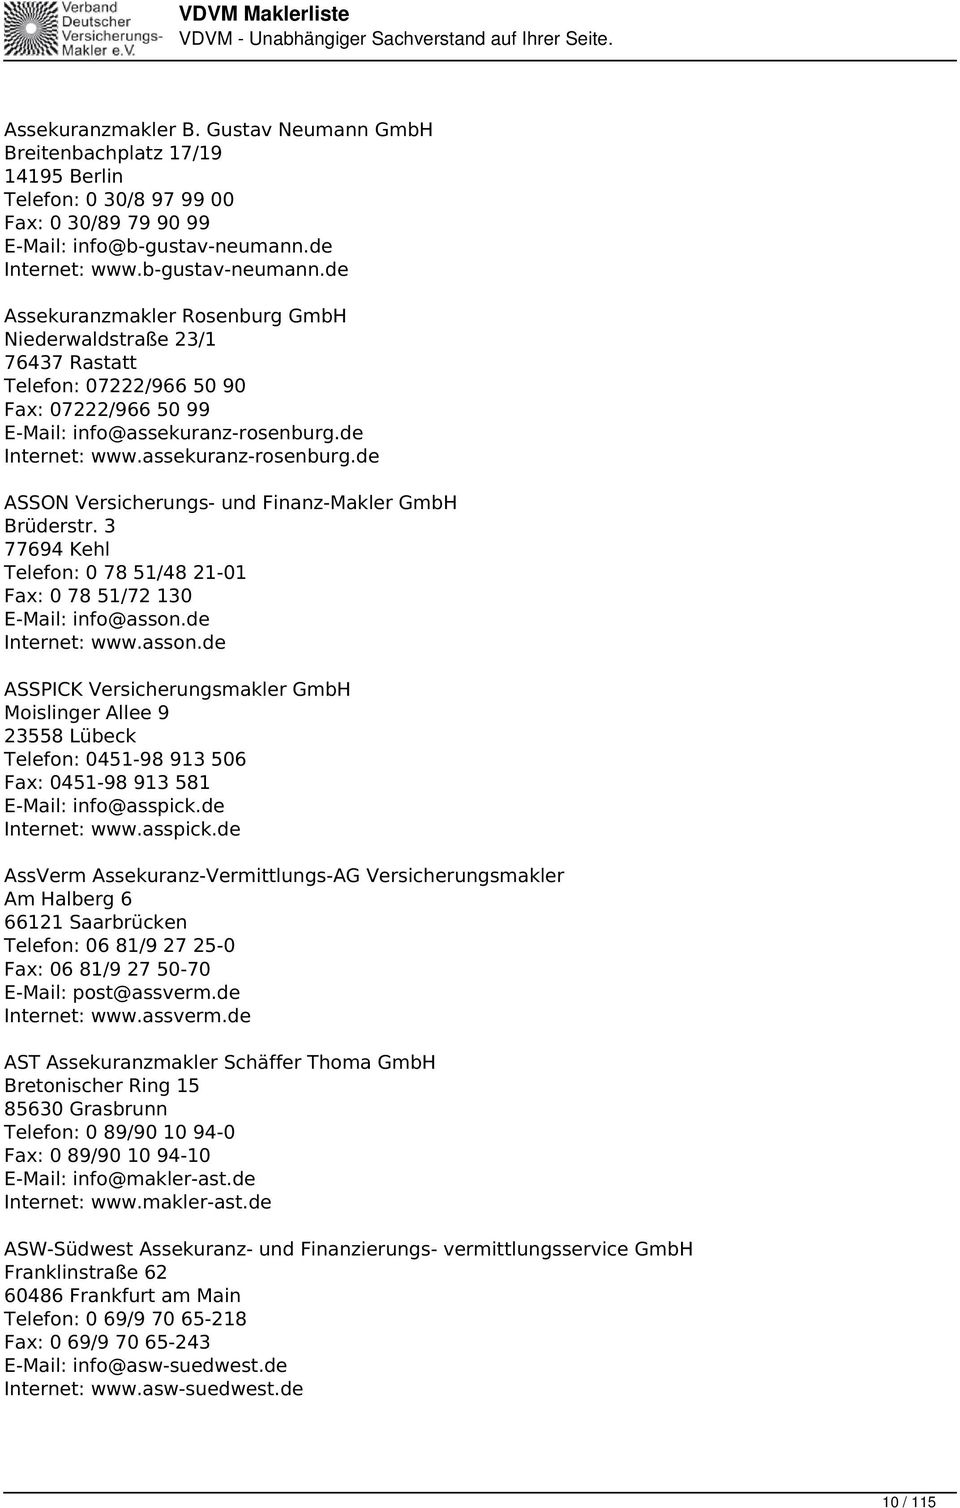 de www.assekuranz-rosenburg.de ASSON Versicherungs- und Finanz-Makler GmbH Brüderstr. 3 77694 Kehl Telefon: 0 78 51/48 21-01 Fax: 0 78 51/72 130 info@asson.